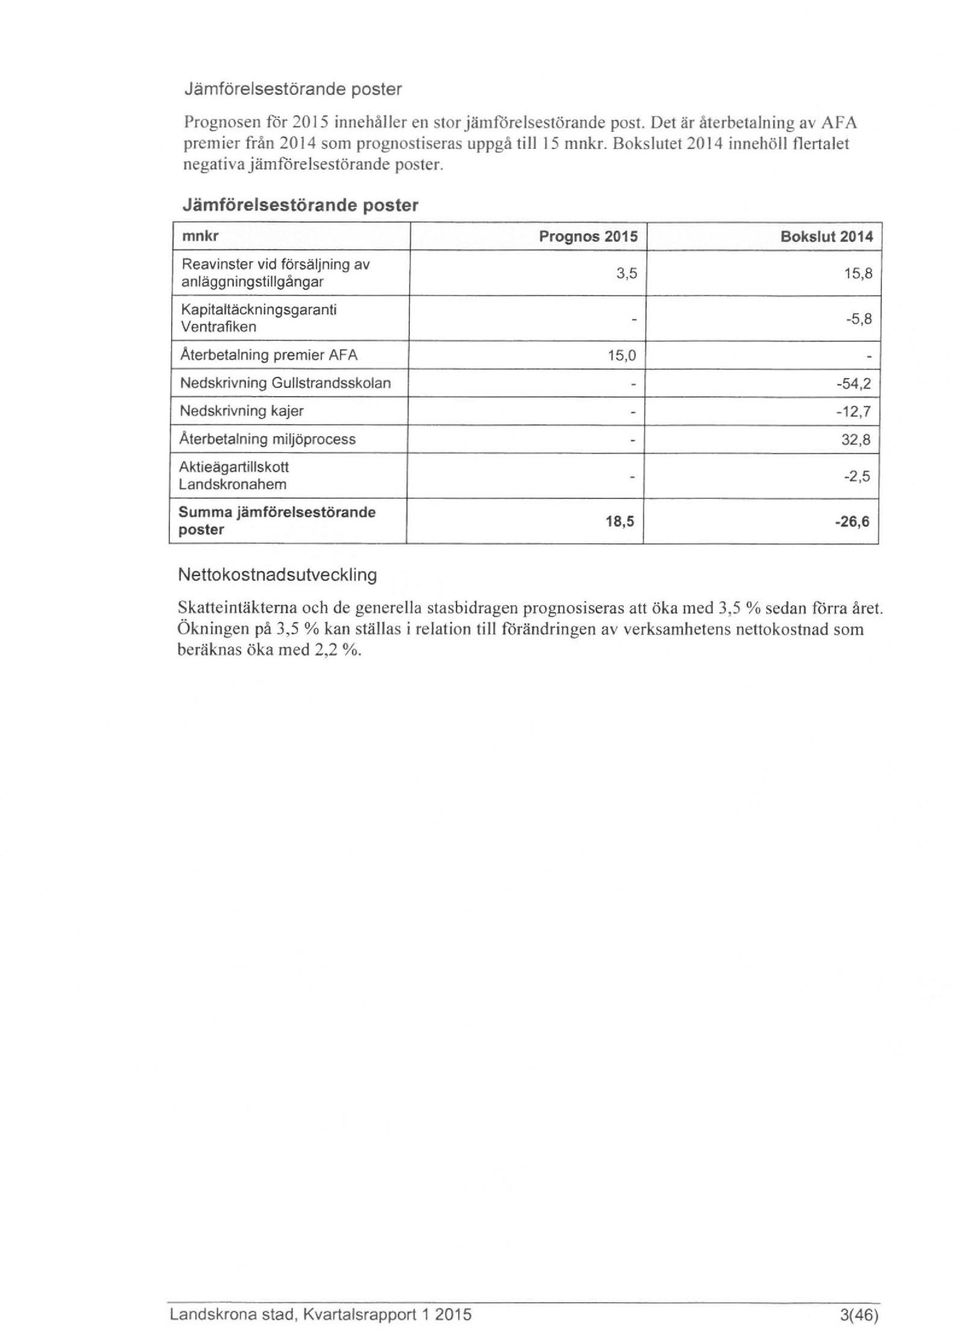 Jämförelsestörande poster mnkr Prognos 2015 Bokslut 2014 Reavinster vid försäljning av anläggningstillgångar Kapitaltäckningsgaranti Ventrafiken 3,5 15,8 - -5,8 Aterbetalning premier AFA 15,0 -